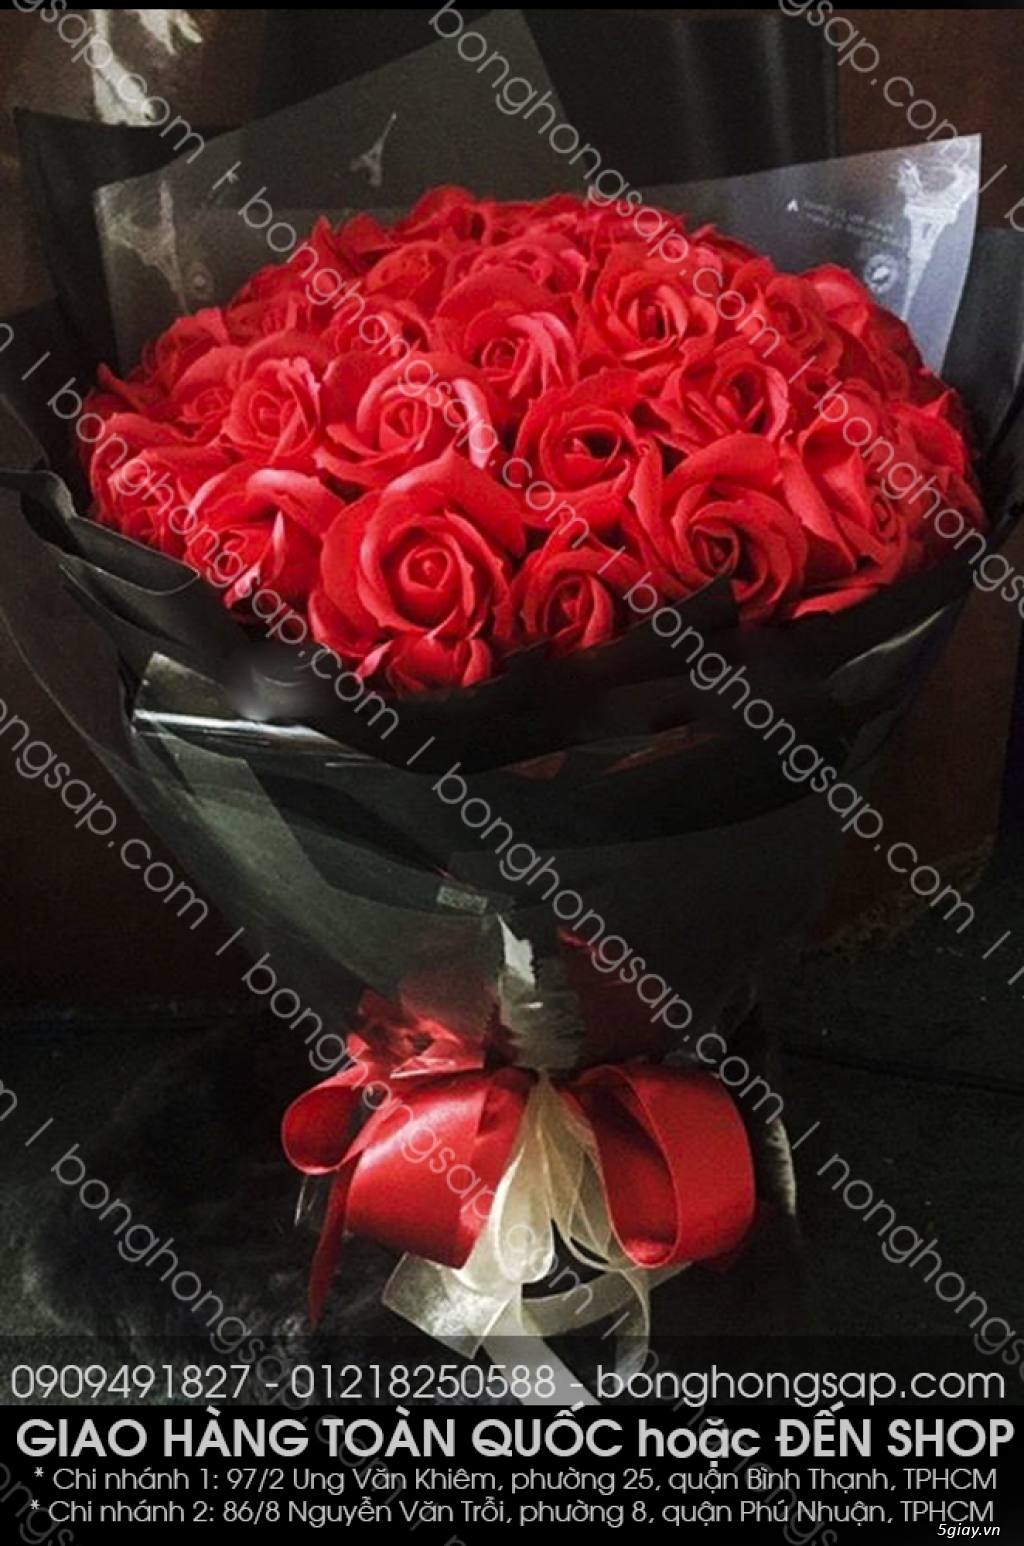 Hoa hồng sáp thơm vĩnh cữu HCM sỉ và lẻ giá rẻ - 9